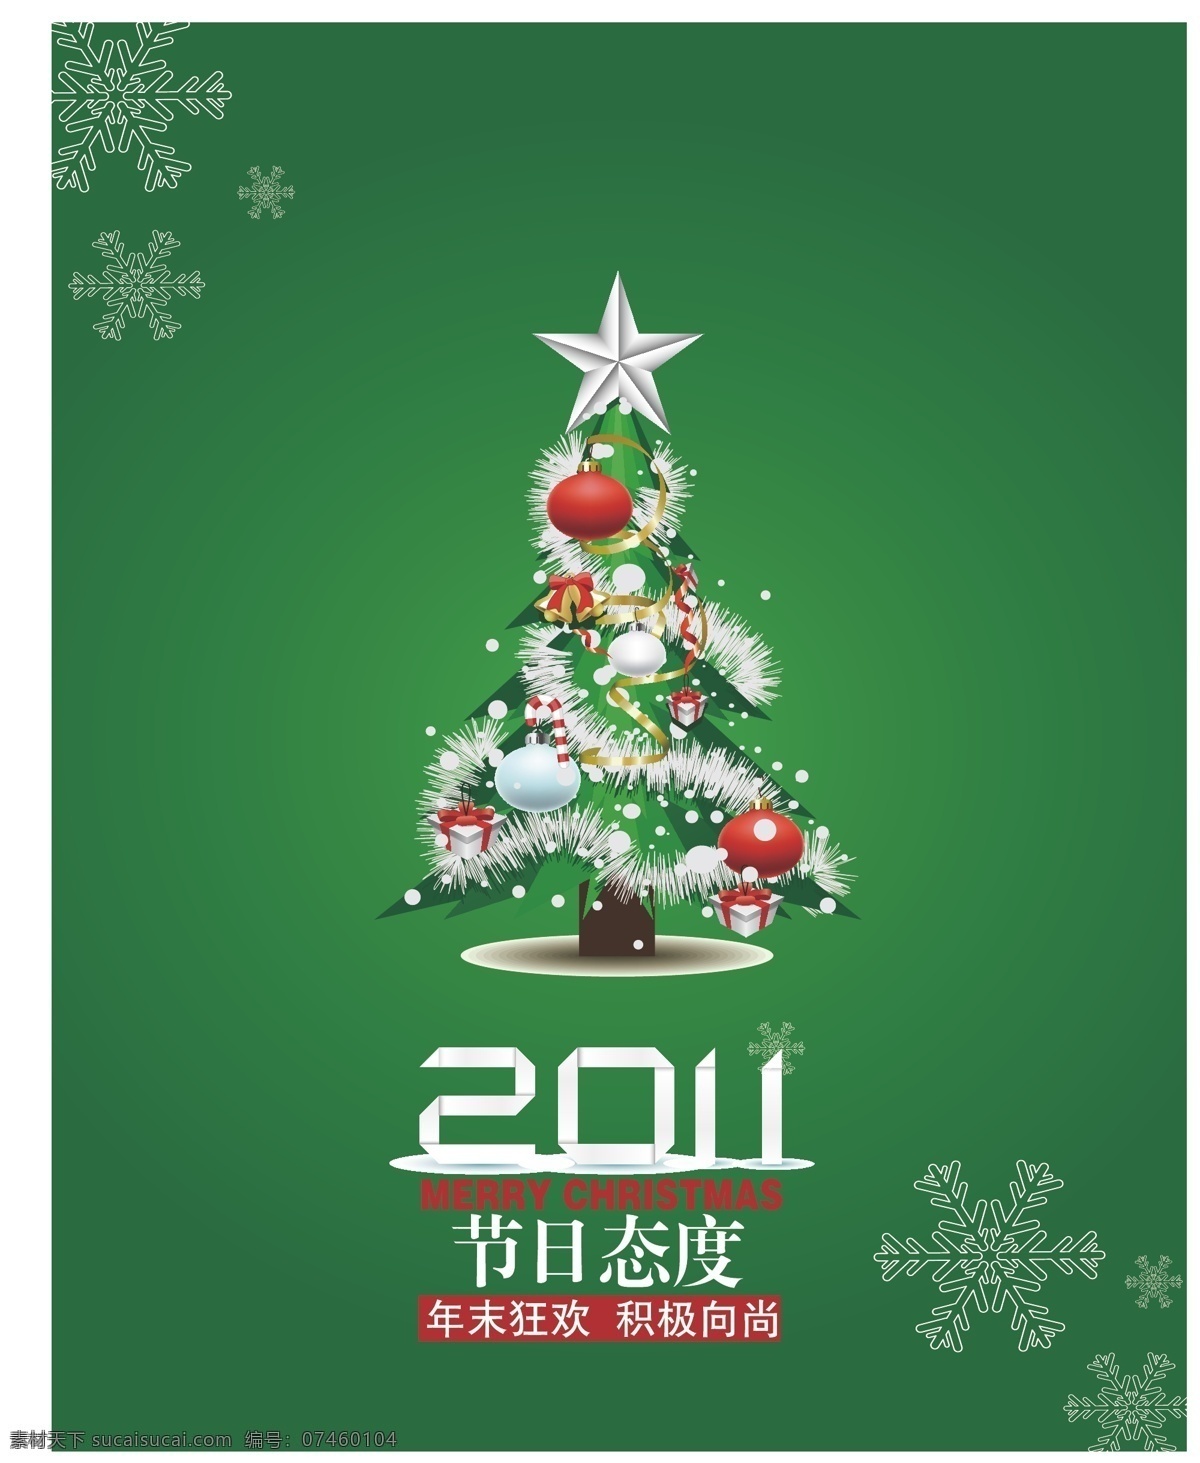 圣诞 封面 2011 节日 节日素材 狂欢 圣诞封面 圣诞节 圣诞树 新年 雪花 星星 矢量 其他节日